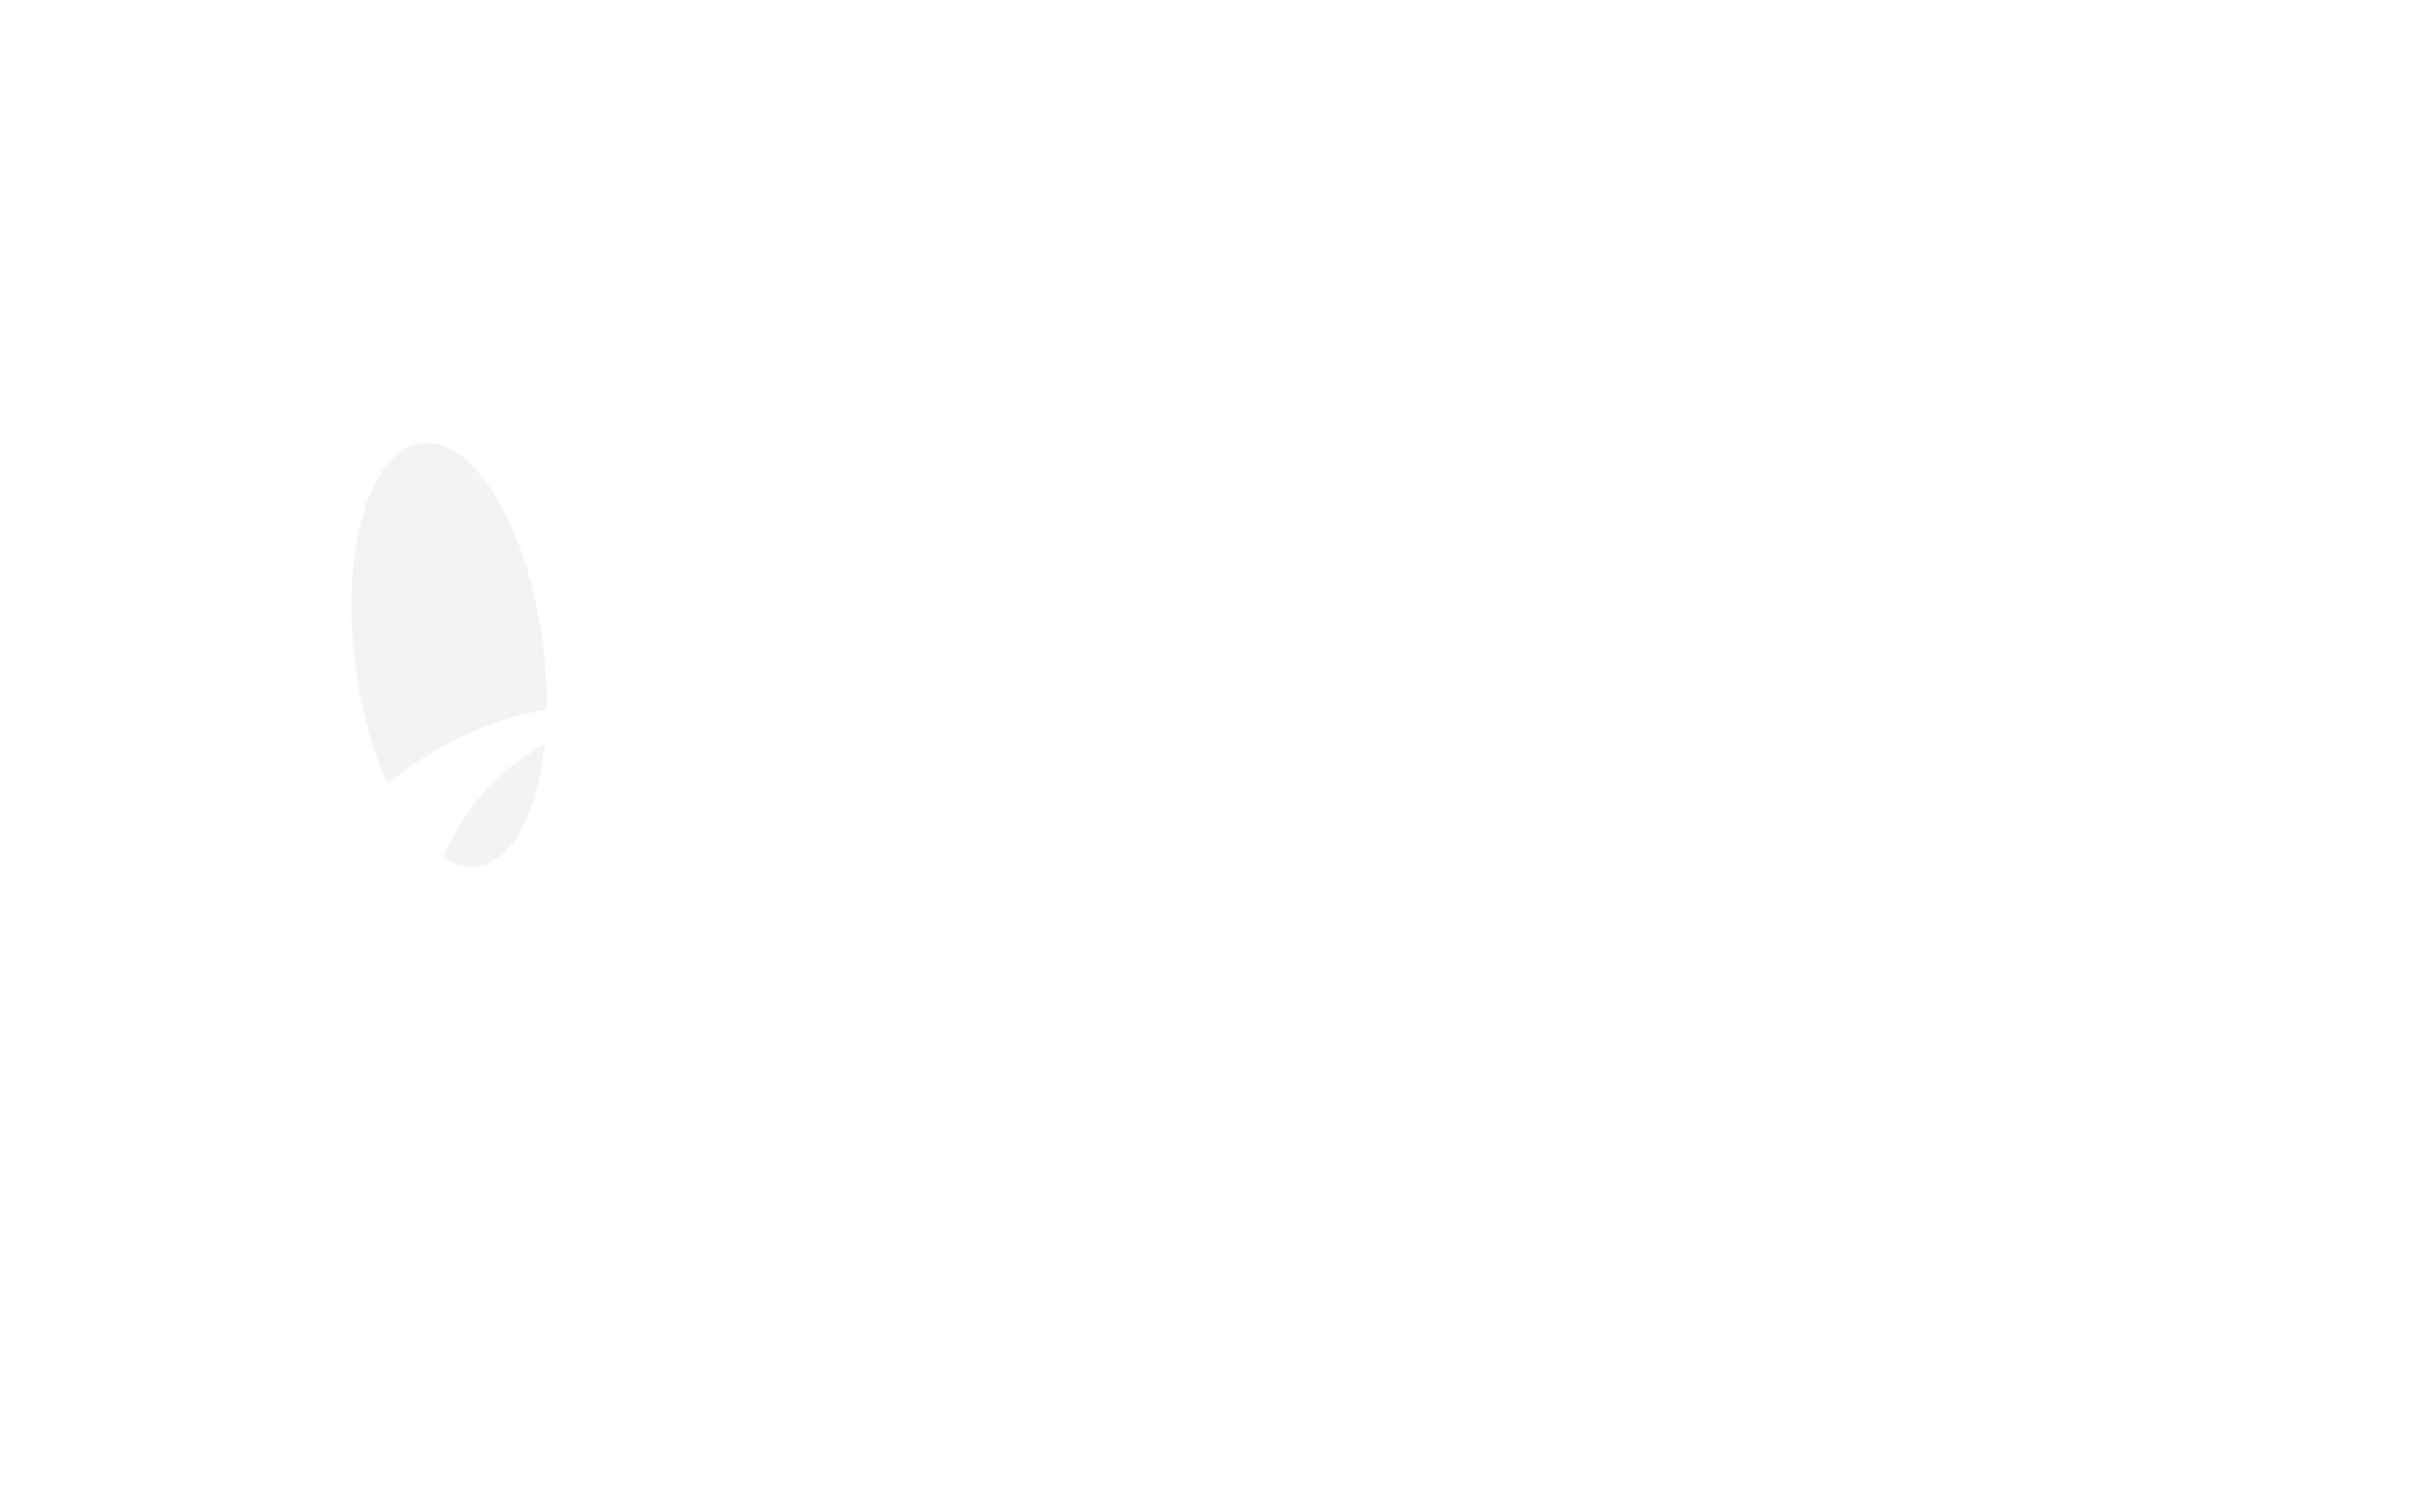 Informace o vstupenkách | Brno Brass Fest